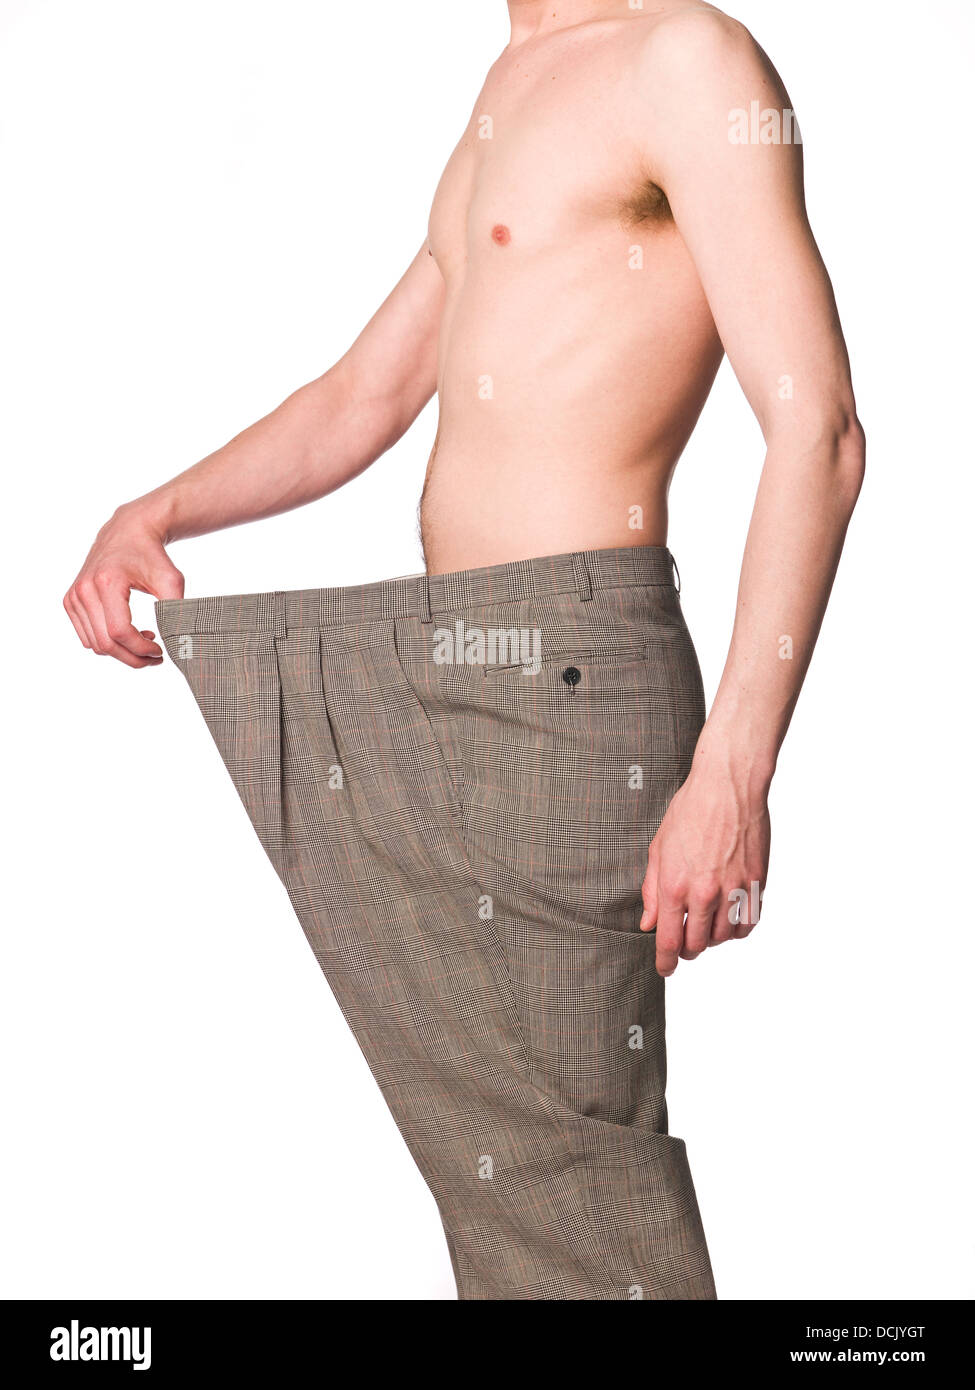 Homme avec un pantalon trop grand à fond blanc Photo Stock - Alamy